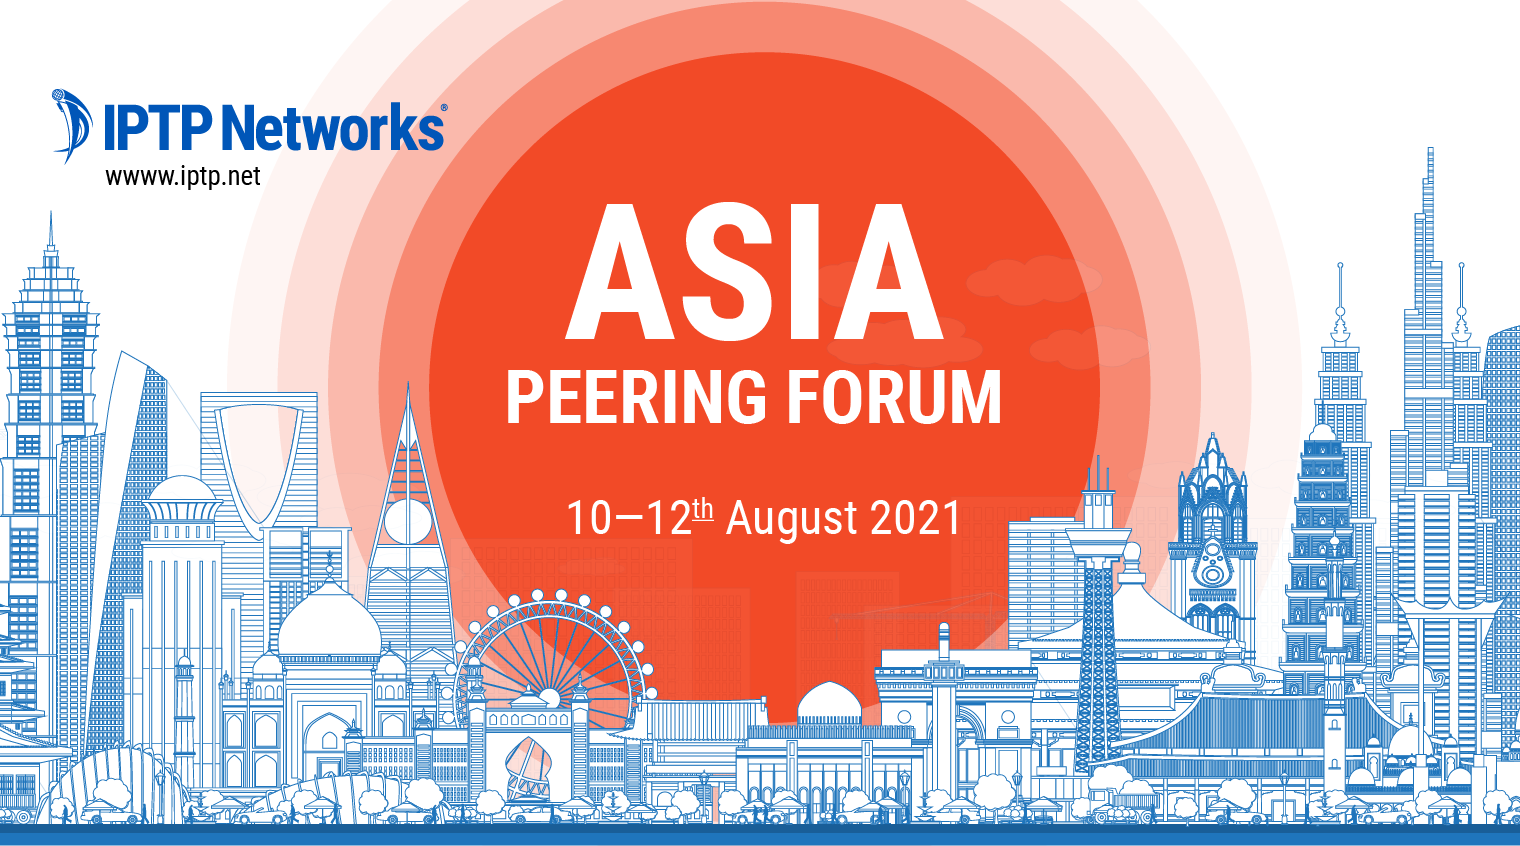 Asia Peering Forum 2021